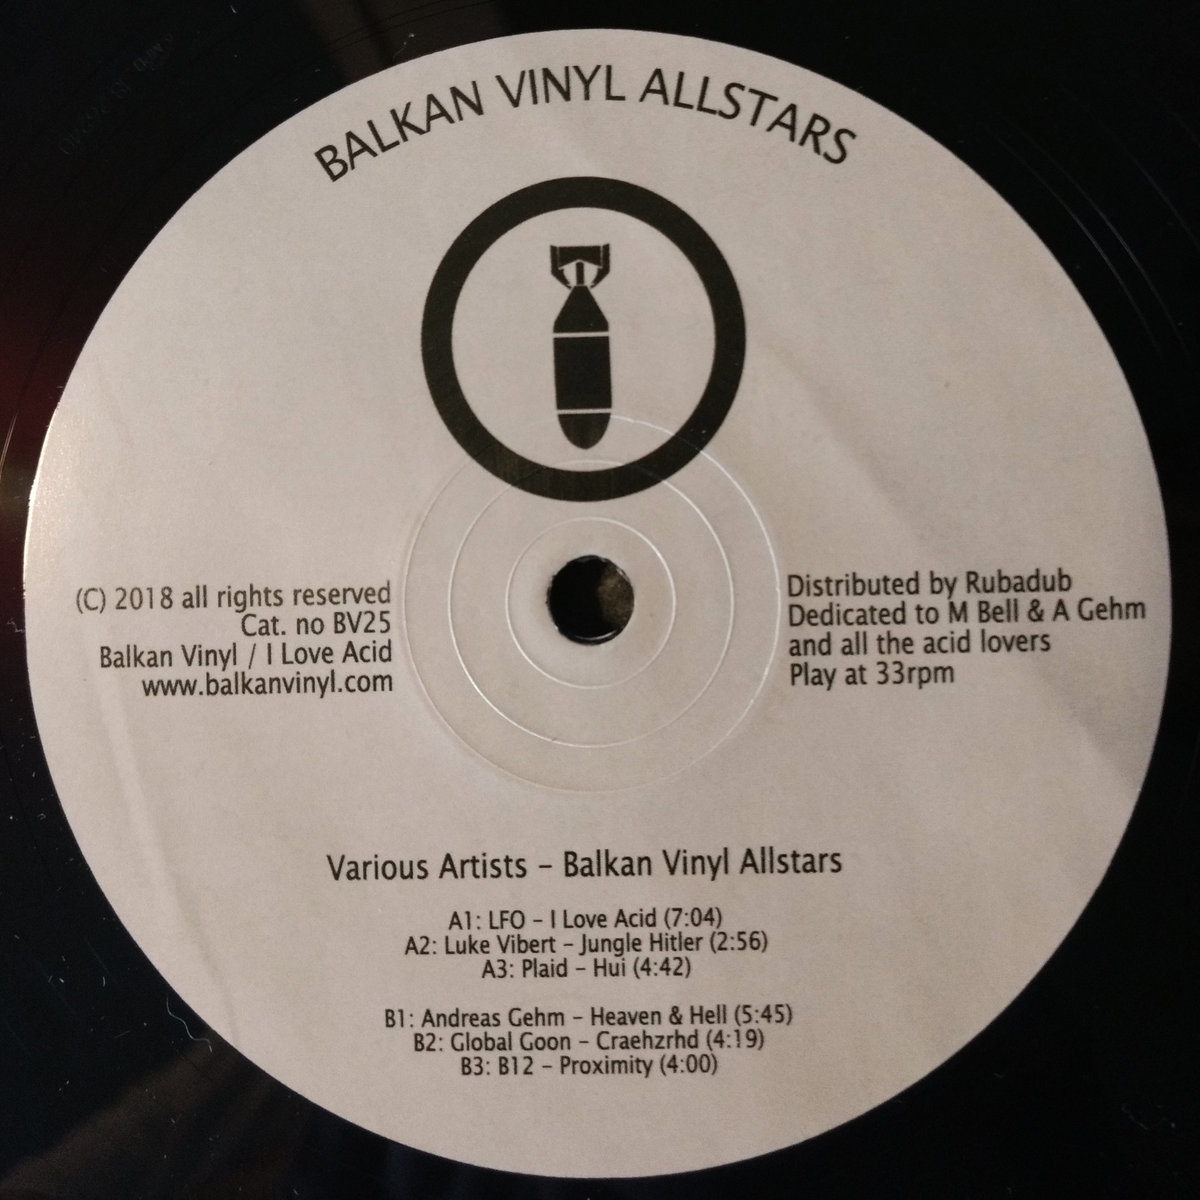 00 752668425177049 VA - Balkan Vinyl Allstars / Balkan Vinyl